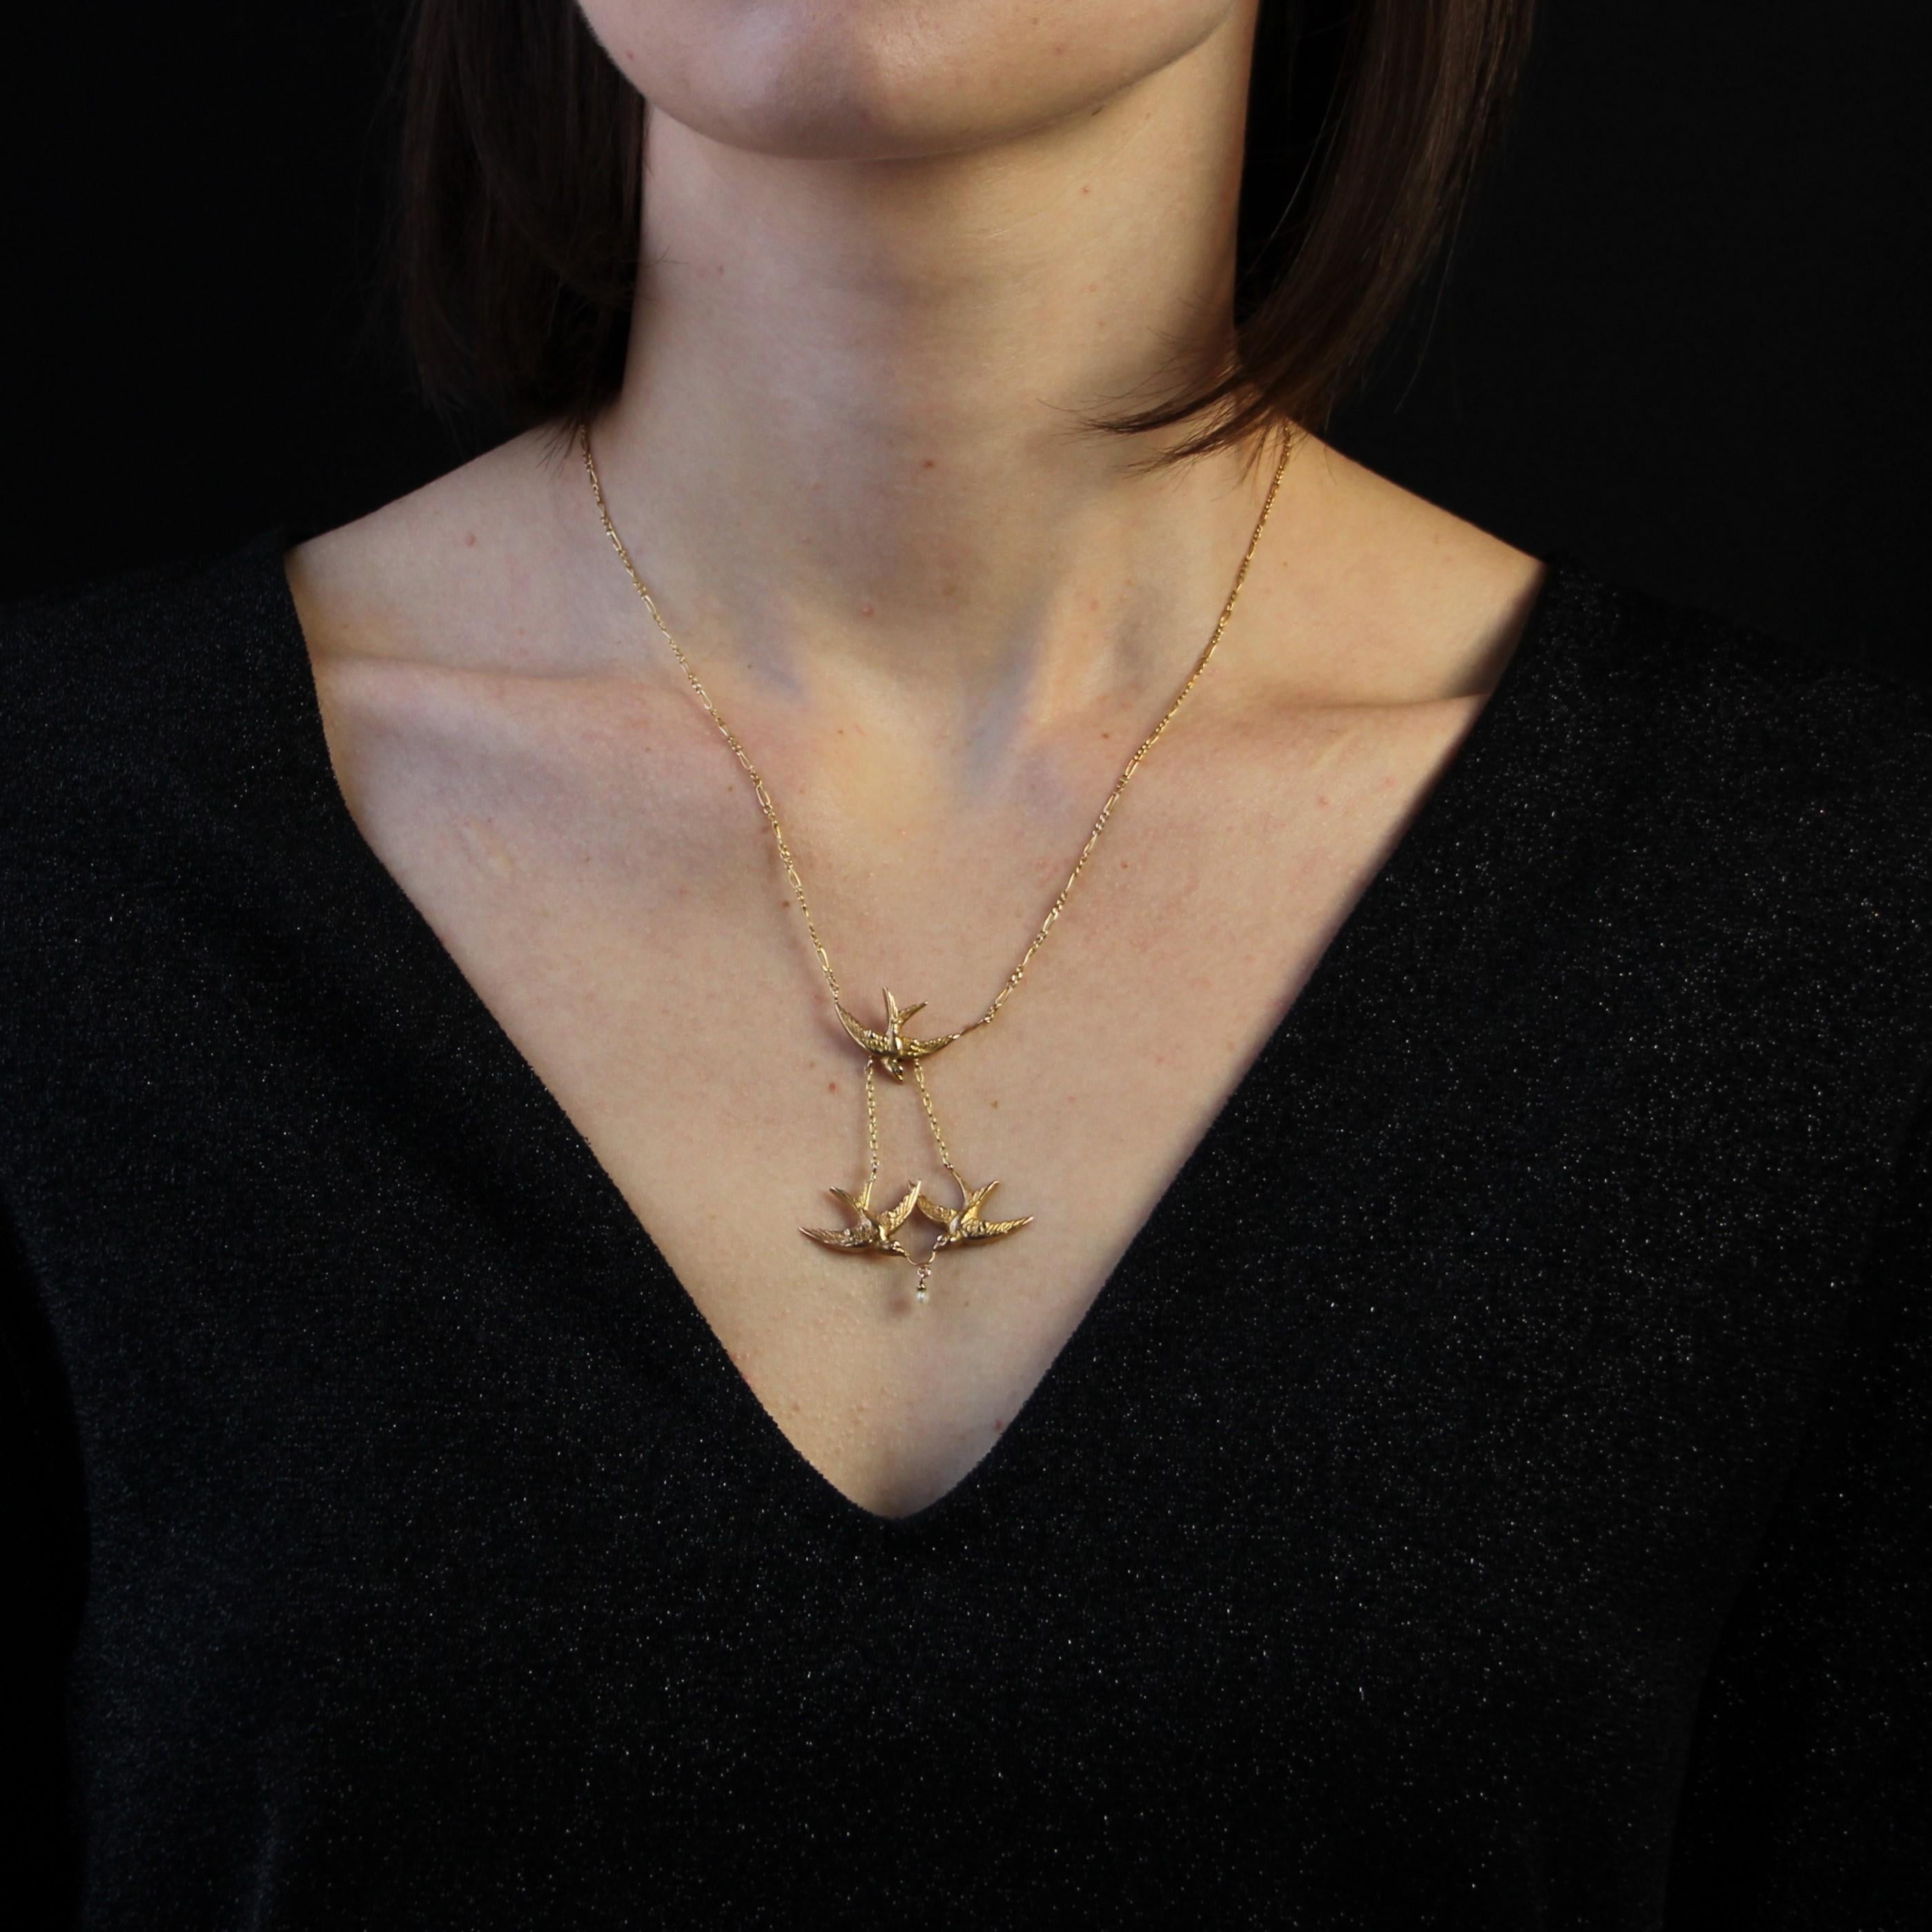 Halskette aus 18 Karat Gelbgold, Adlerkopfpunze.
Diese zarte antike Halskette besteht aus feinem, abwechselnd geflochtenem Gourmetgewebe, das auf der Vorderseite ein Motiv aus 3 Schwalben trägt, von denen 2 Quasten sind, die eine kleine Barockperle